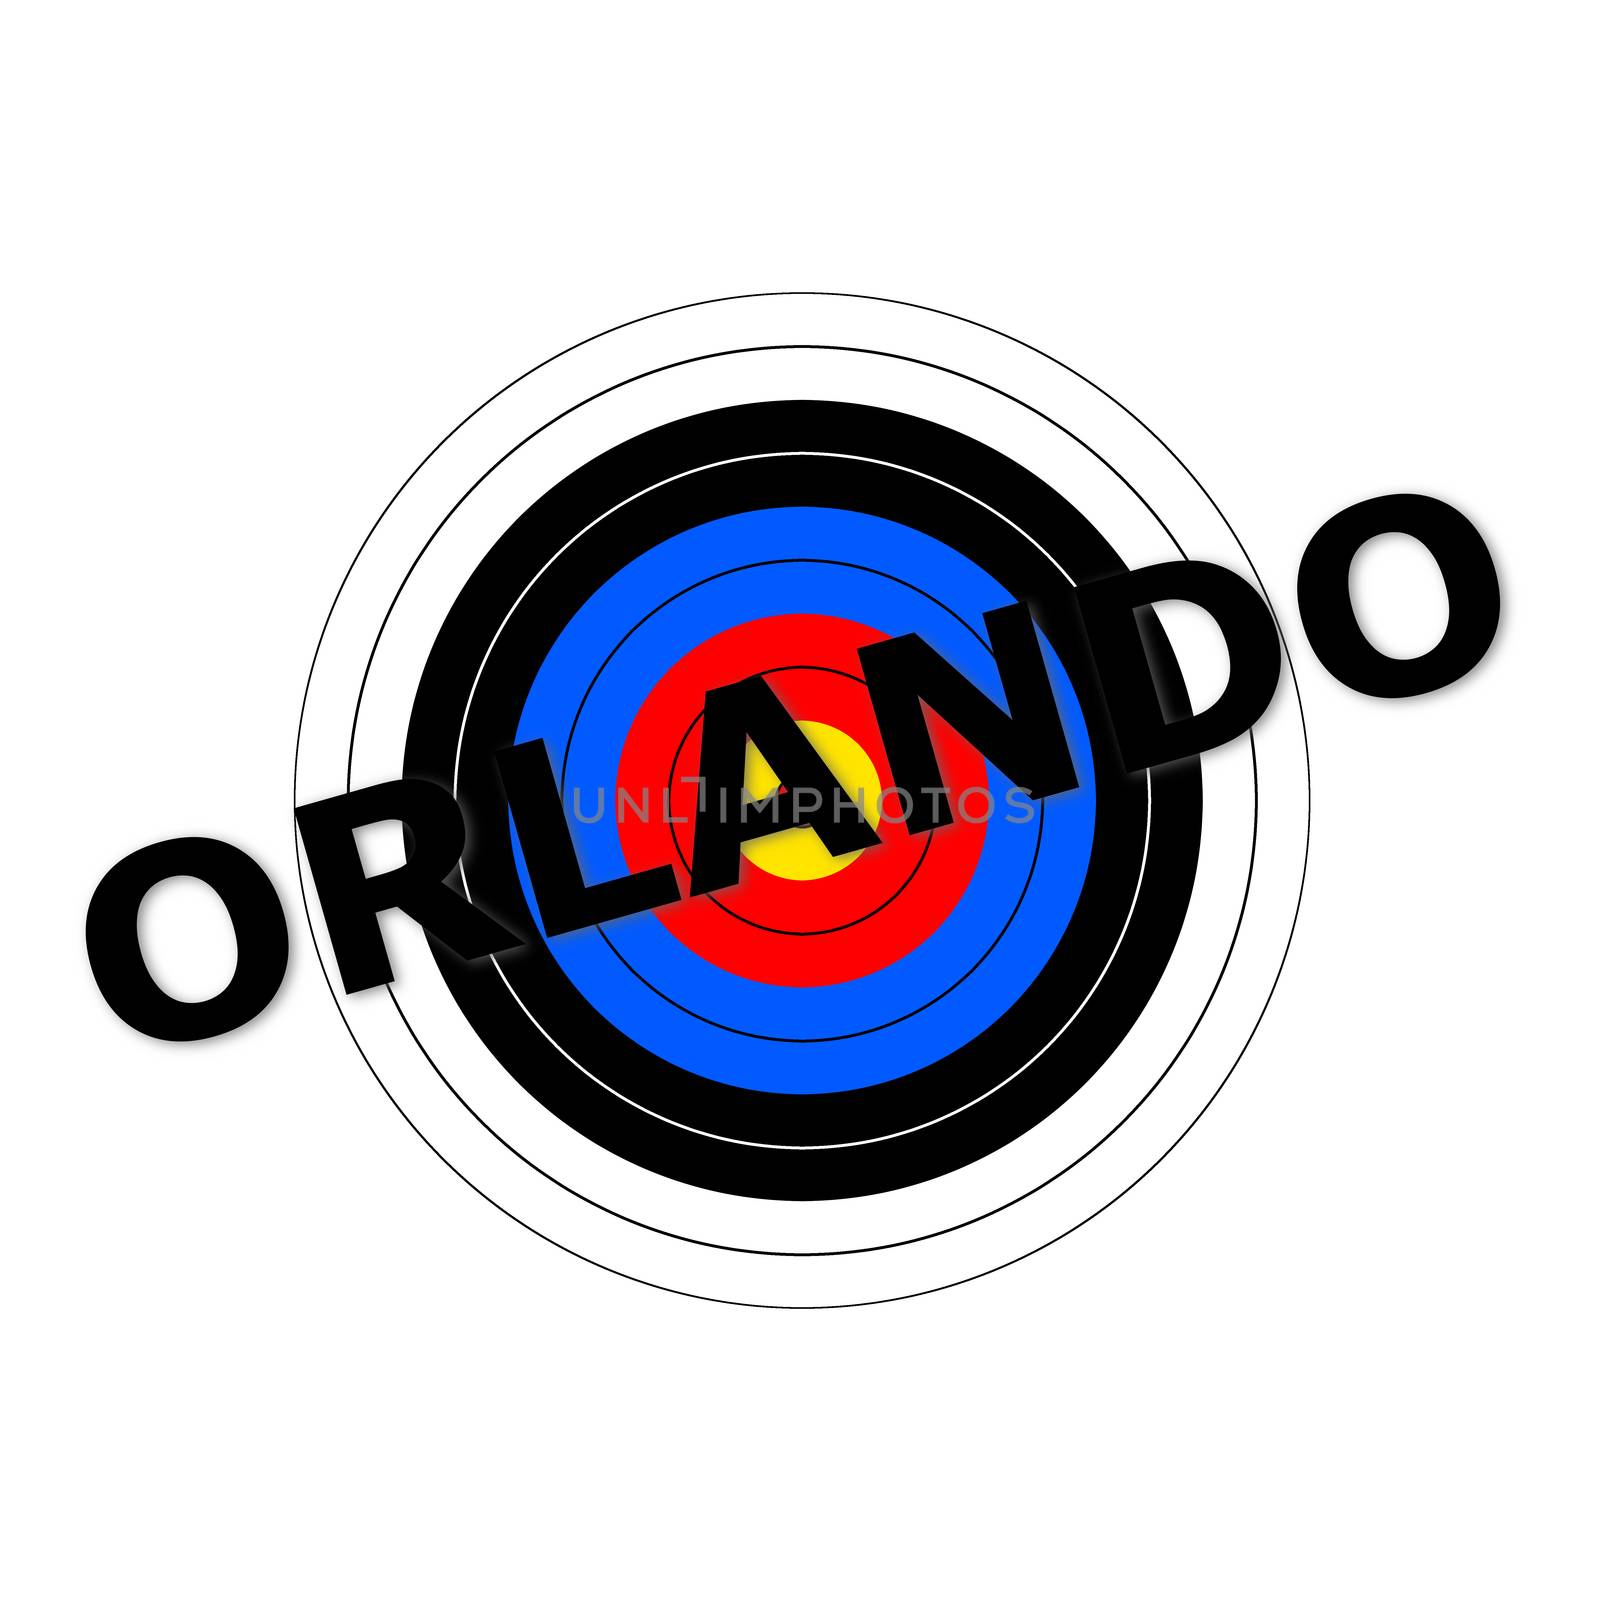 Orlando Target by hlehnerer